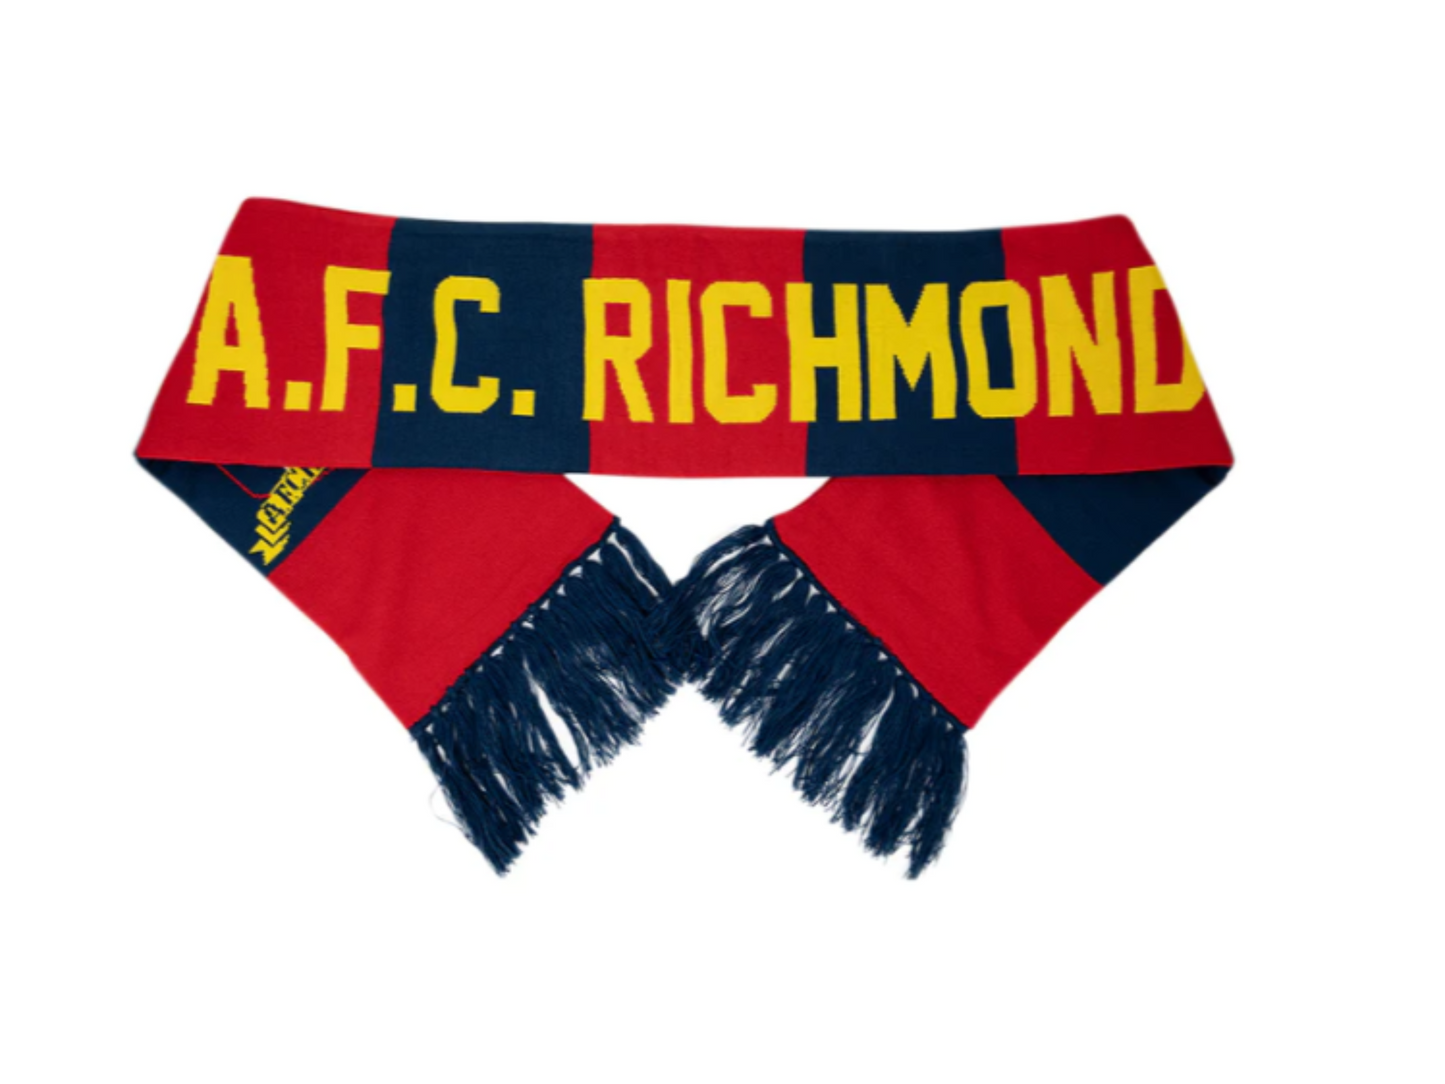 A.F.C Richmond Scarf